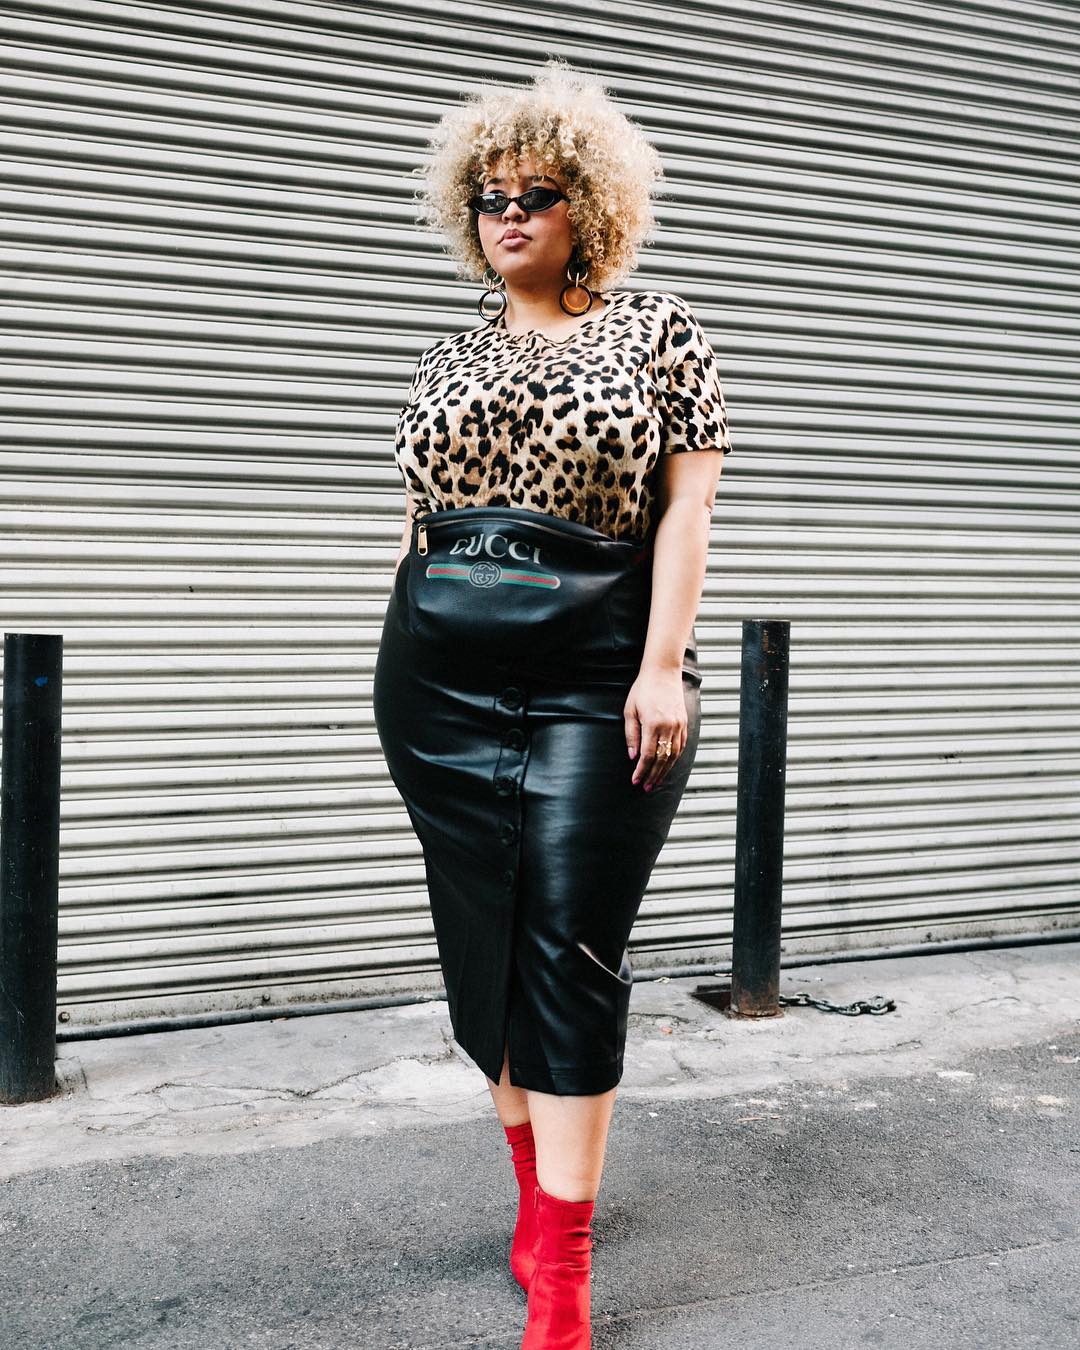  Як носити леопардовий принт жінкам з формами: 10 вдалих прикладів